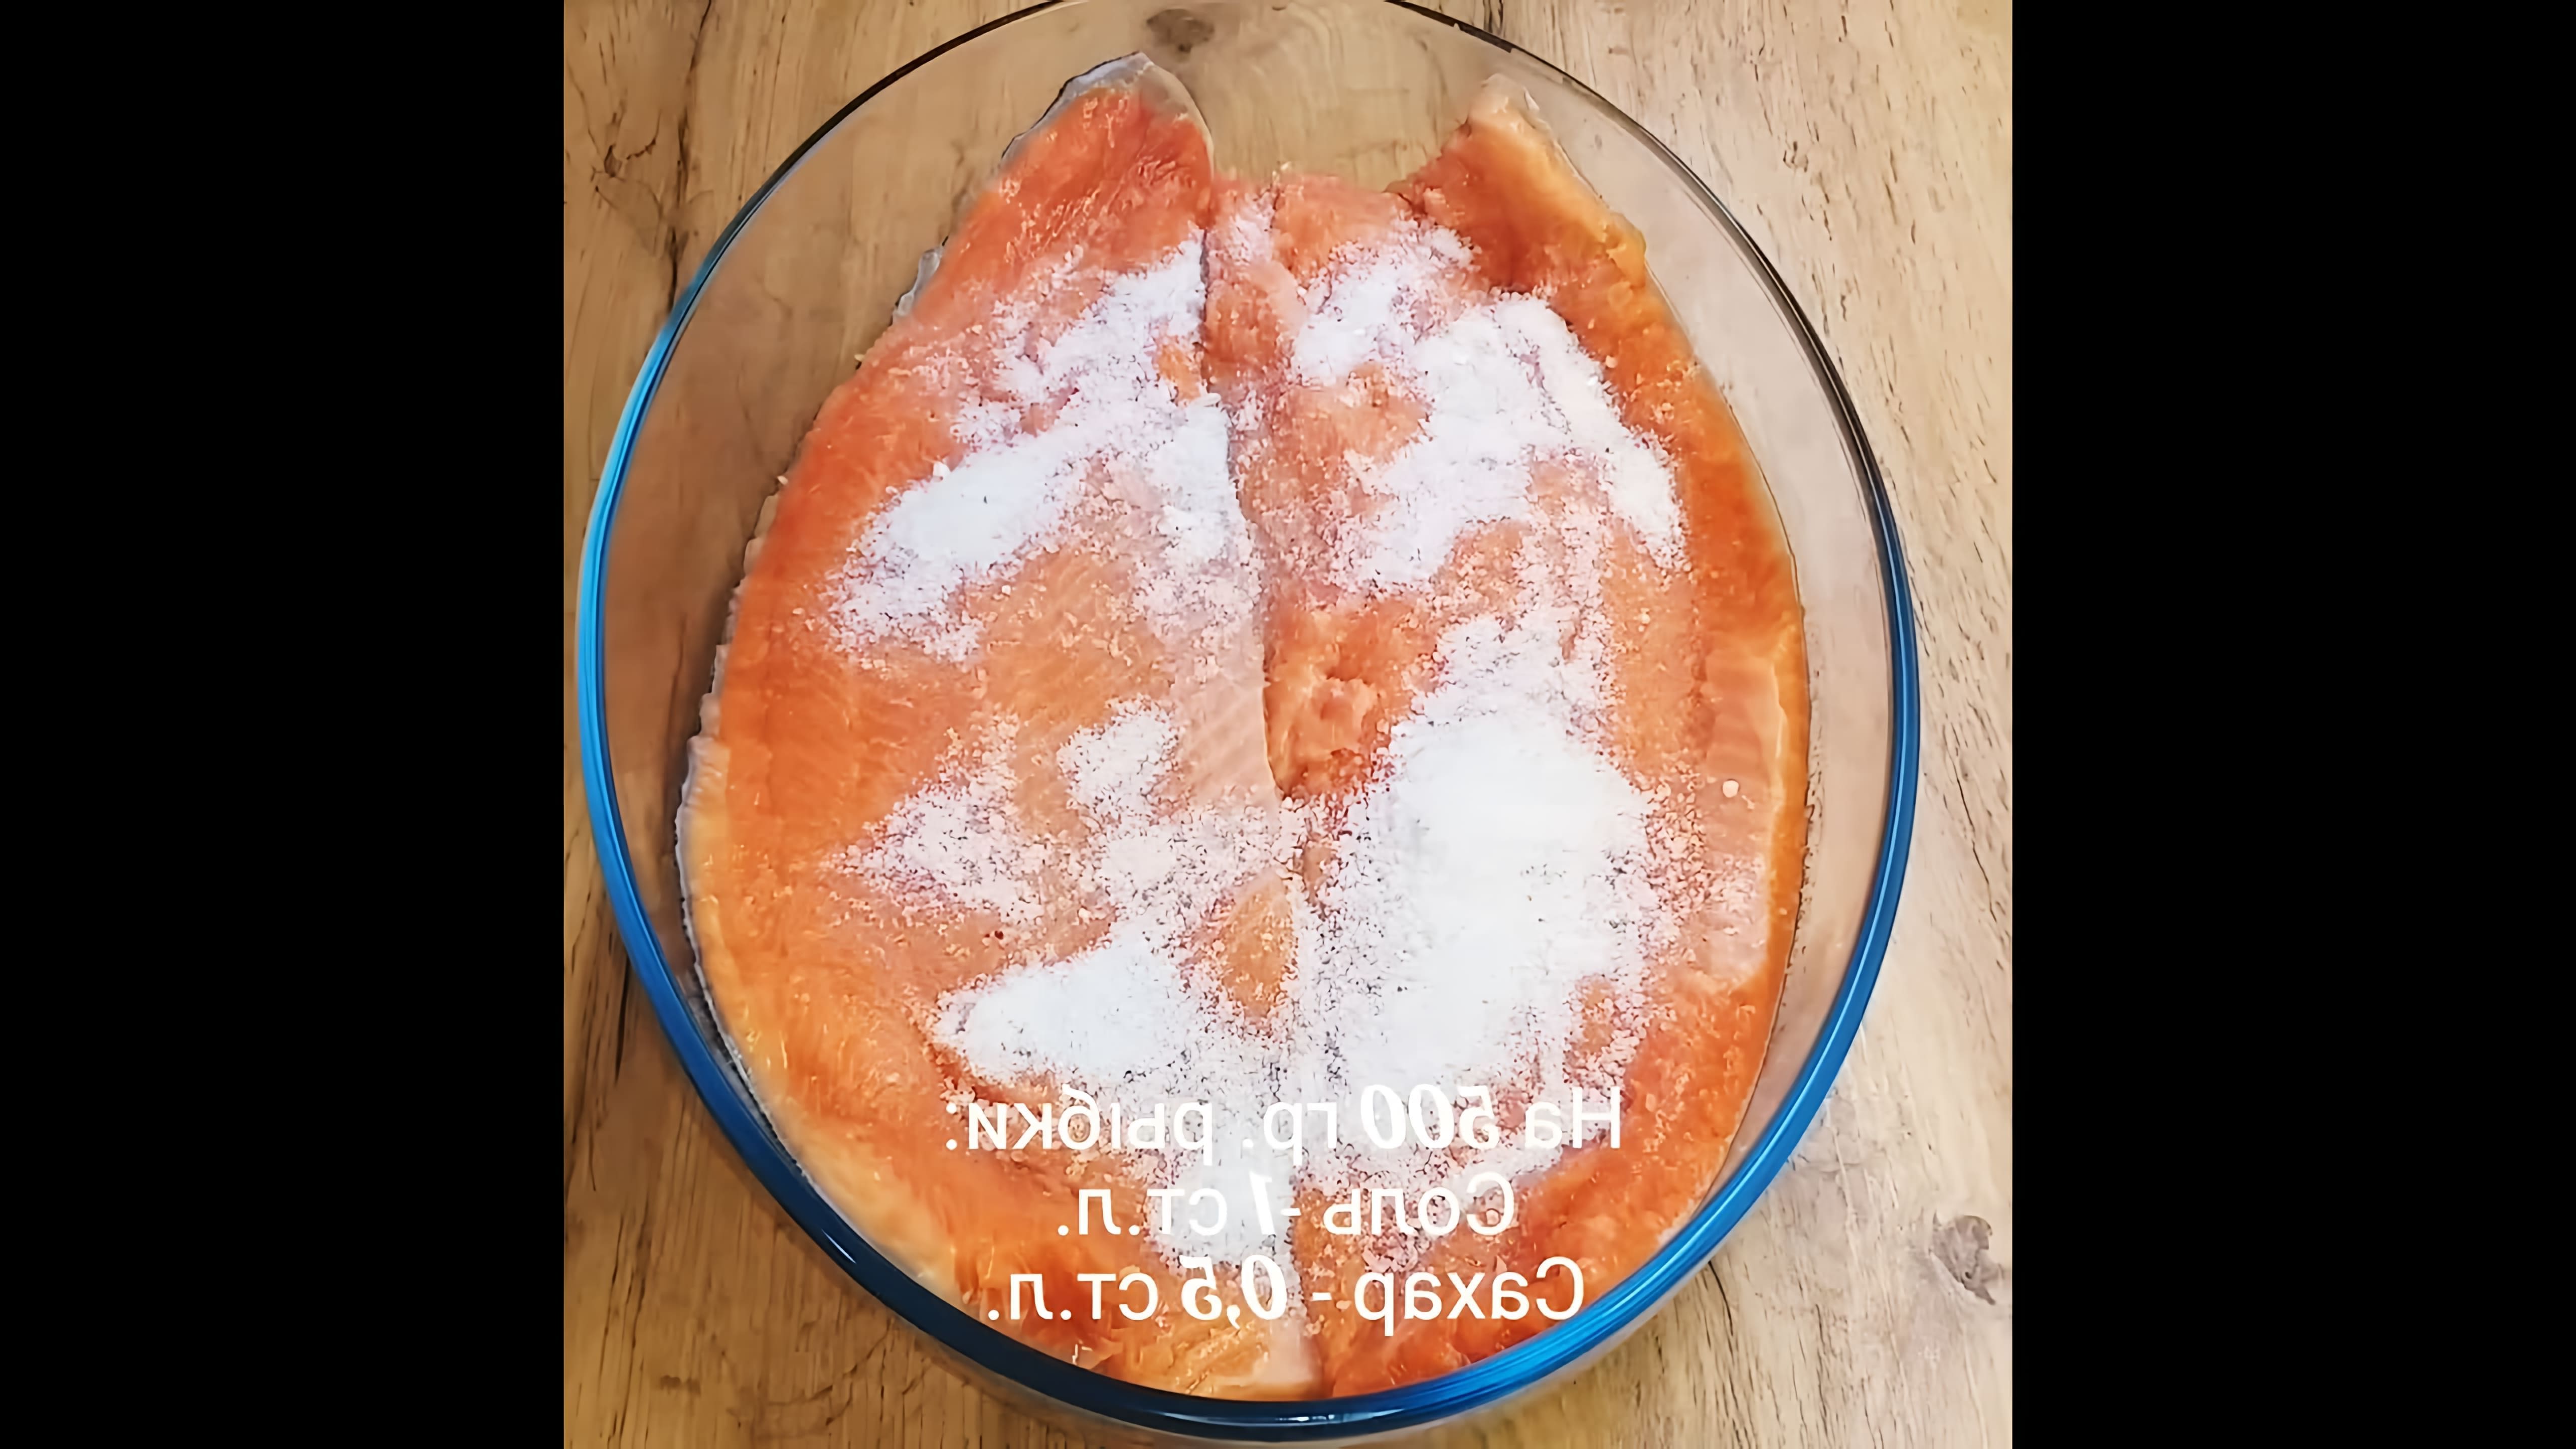 В этом видео-ролике будет представлен рецепт приготовления слабосоленой форели (лосося), который считается одним из самых лучших